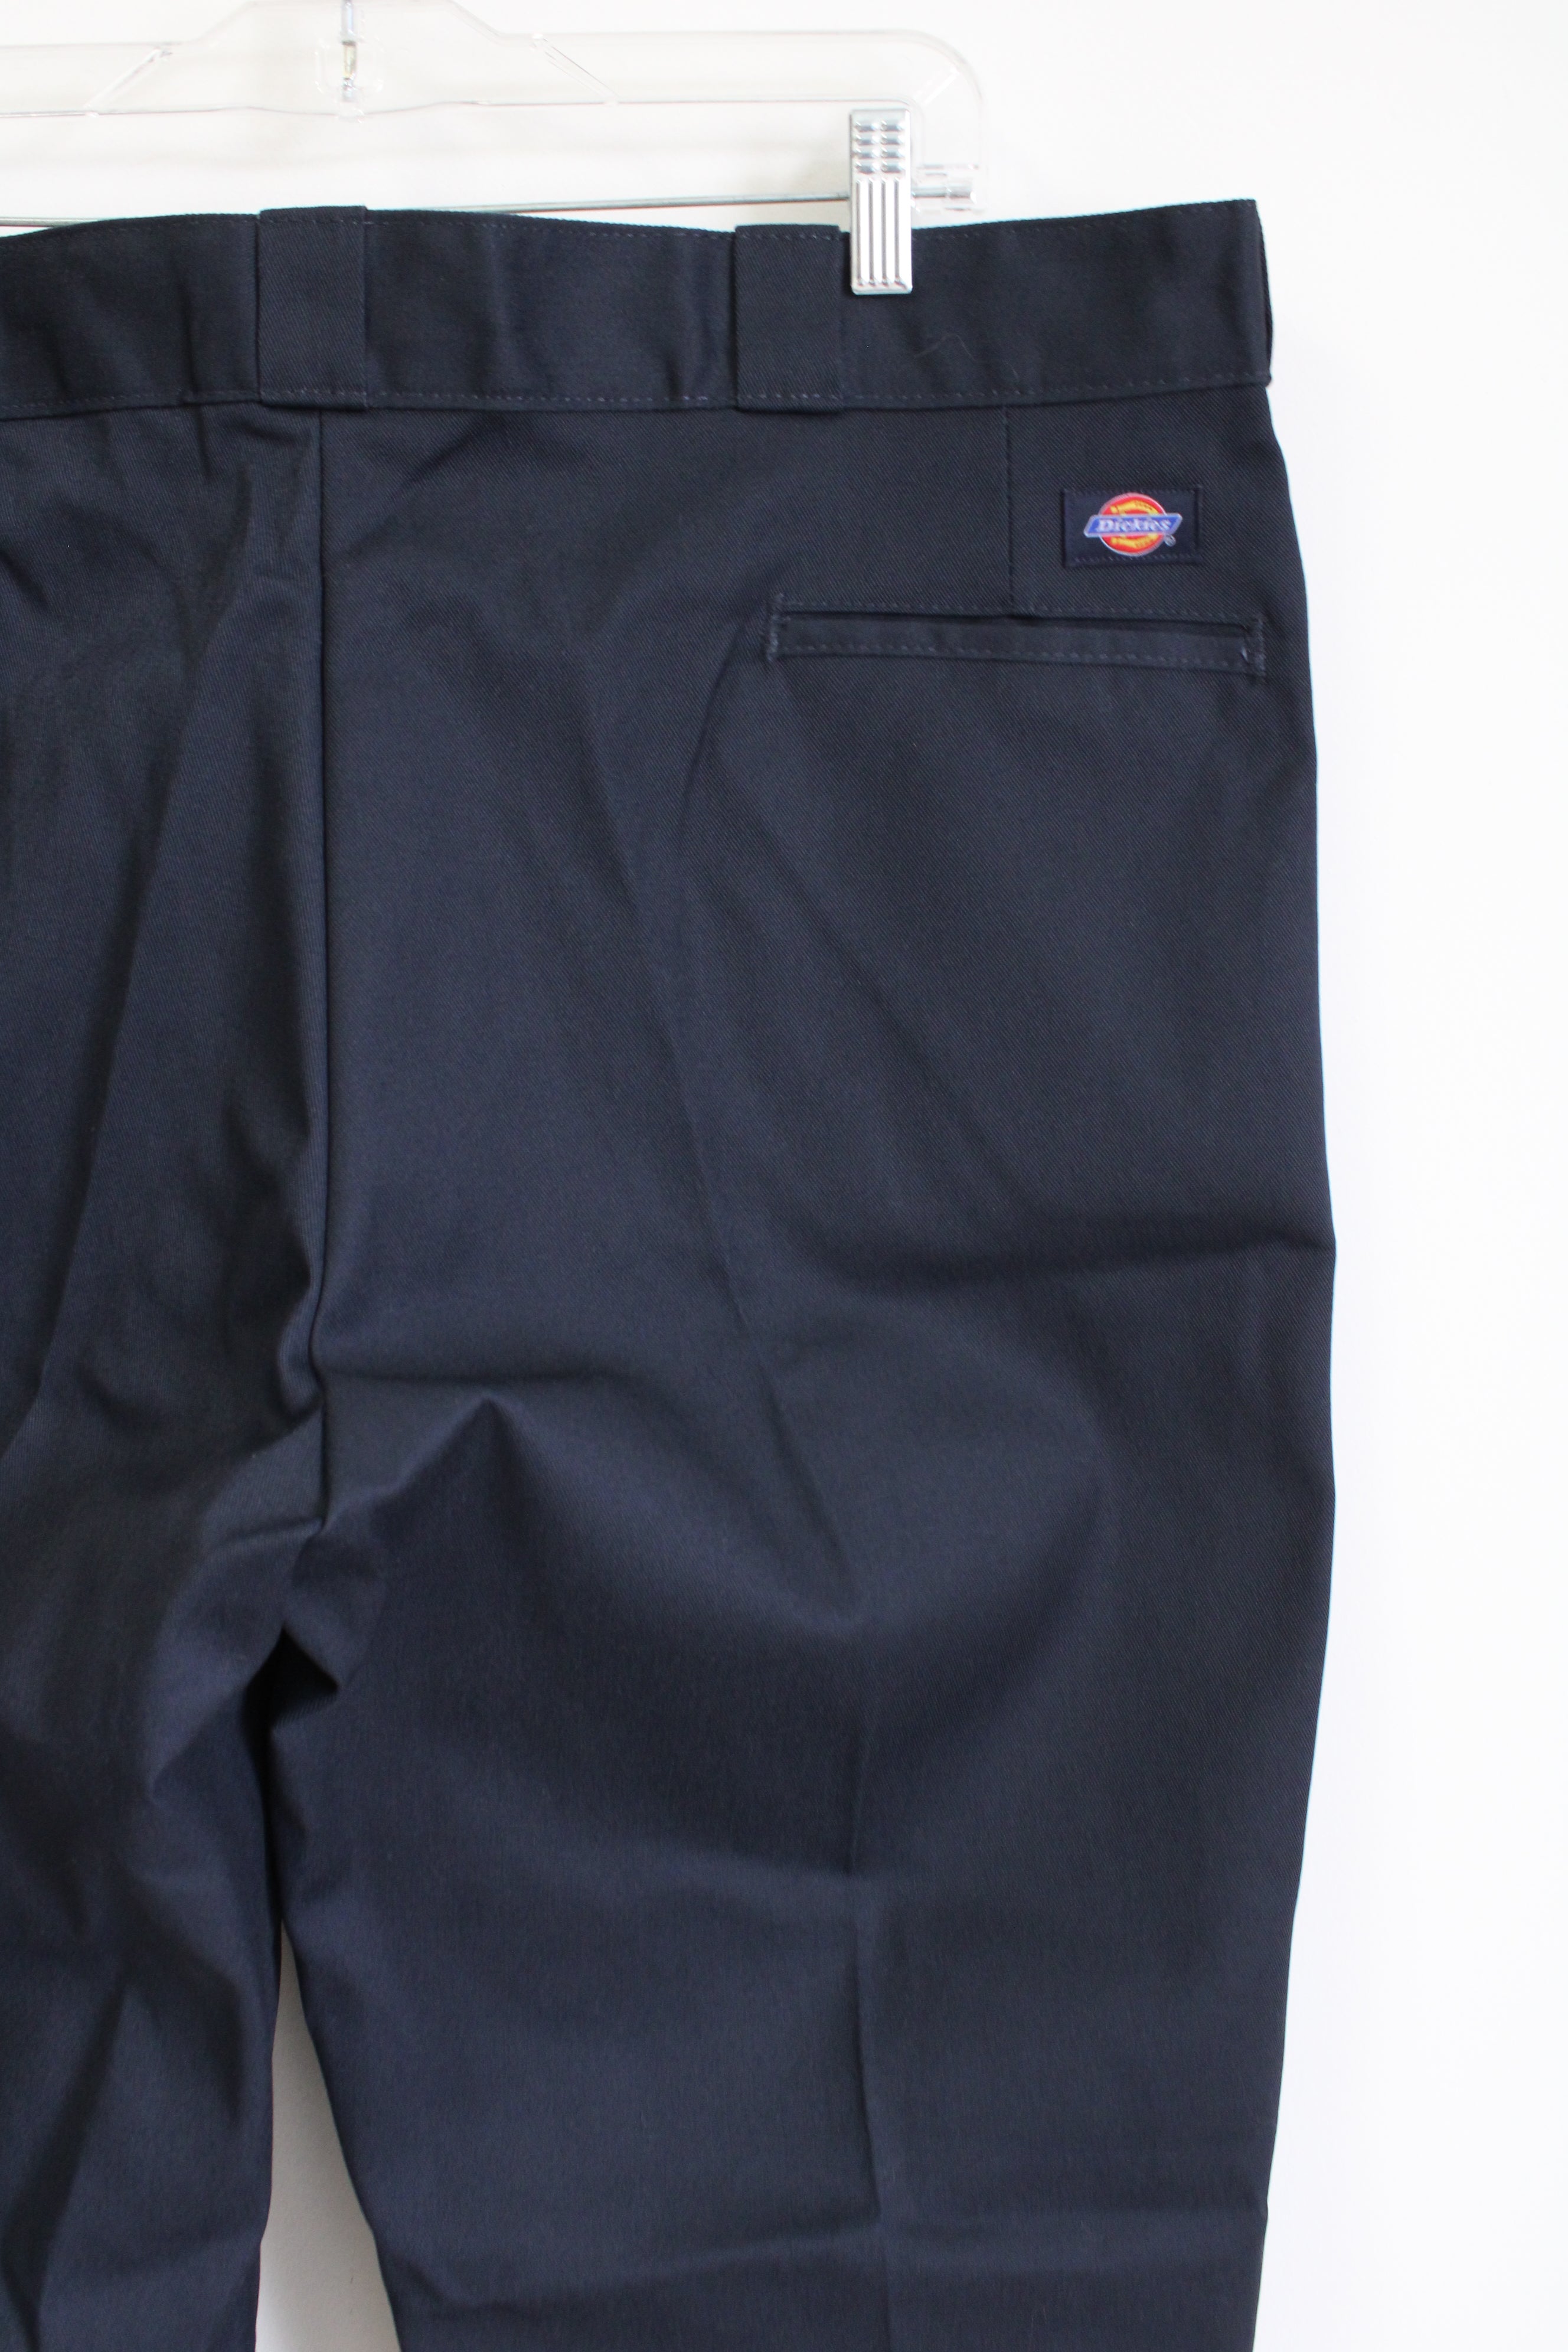 Dickies 874 Original Fit Navy Blue Work Pants | 40X30